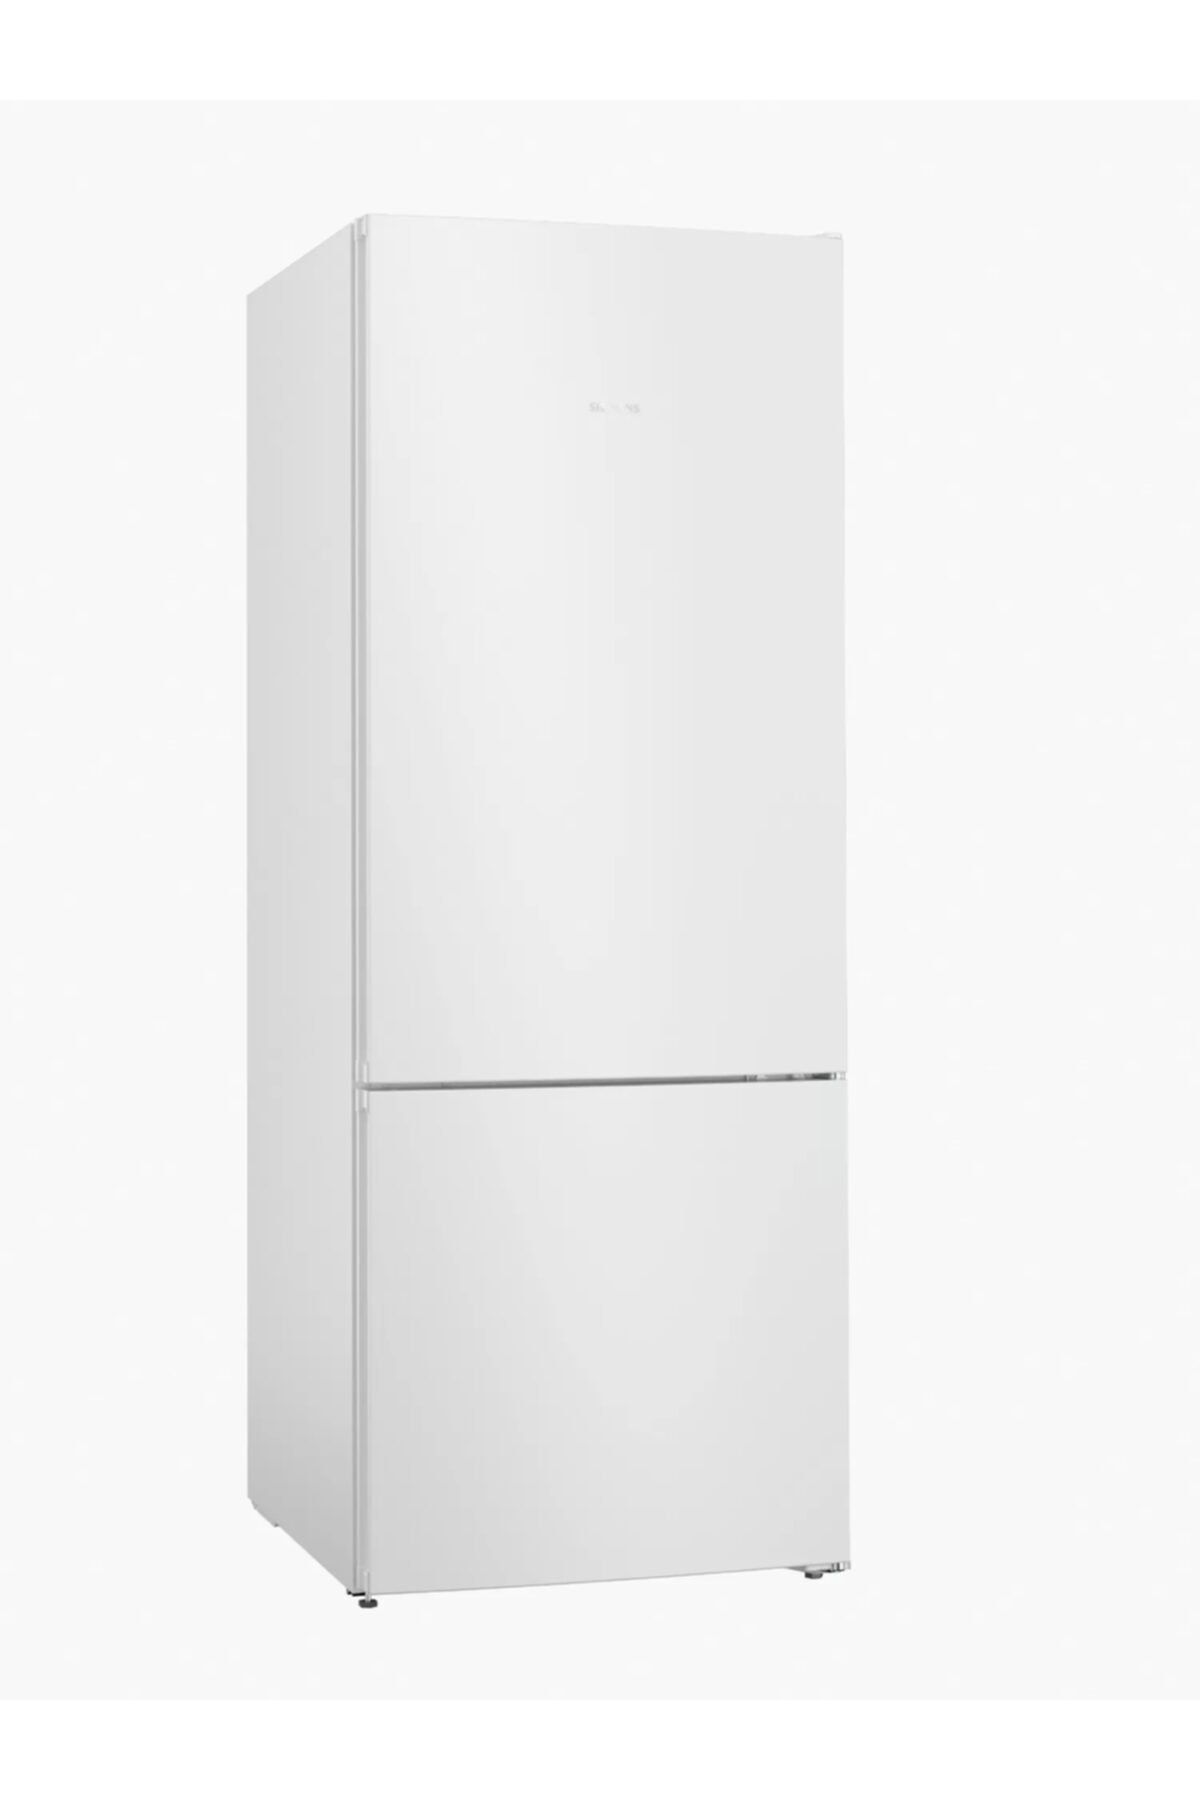 en iyi Siemens buzdolapları 